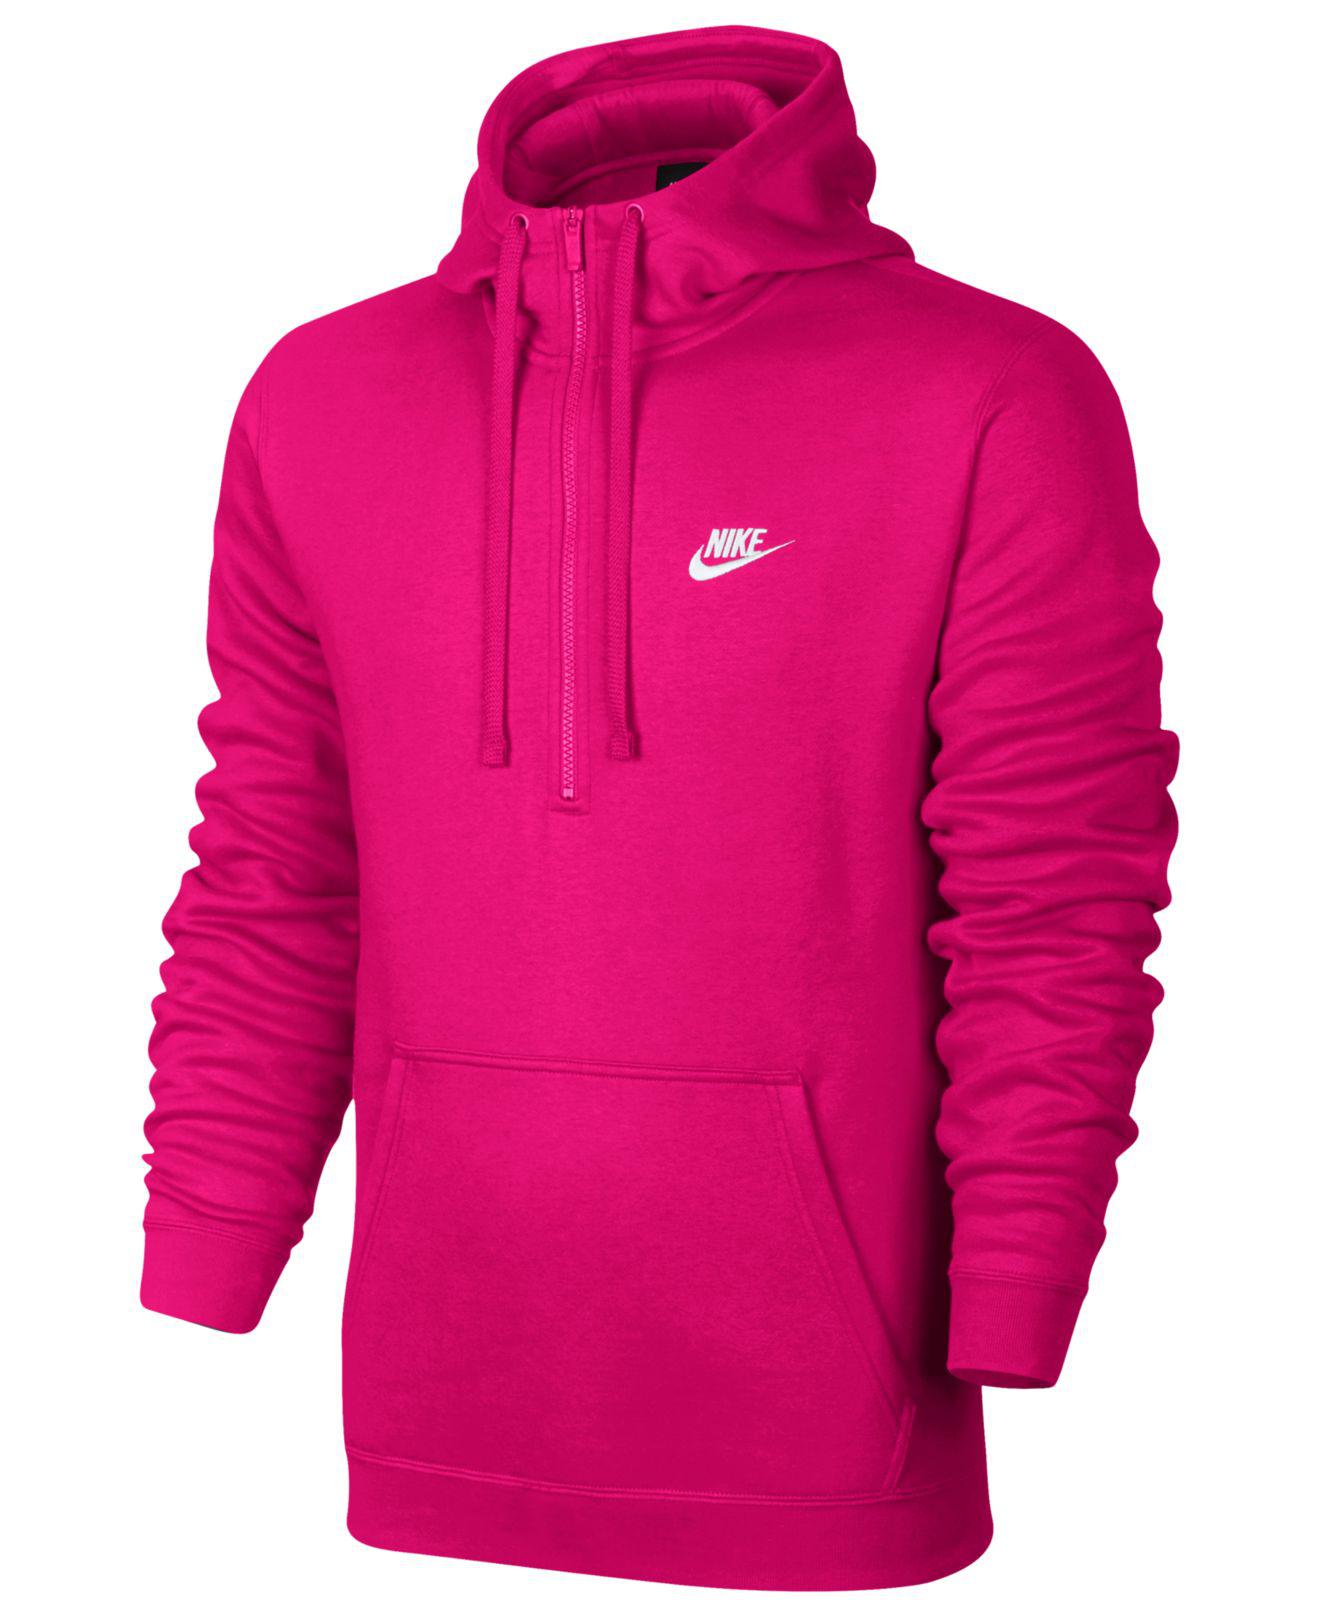 Nike Fleece Half-zip Hoodie in Pink for Men - Lyst